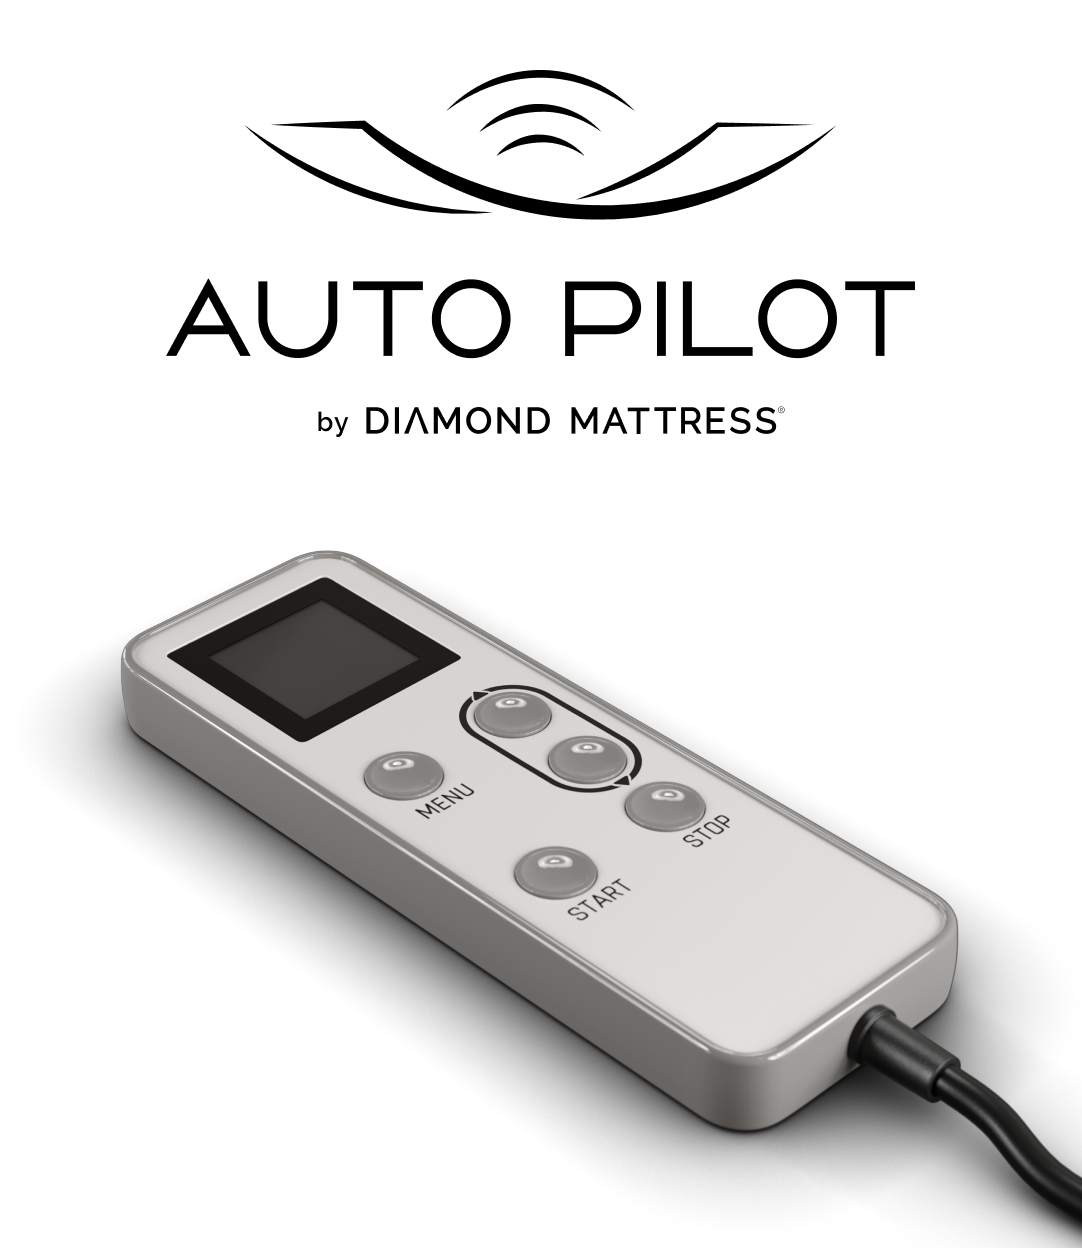 Auto Pilot Smart Bed